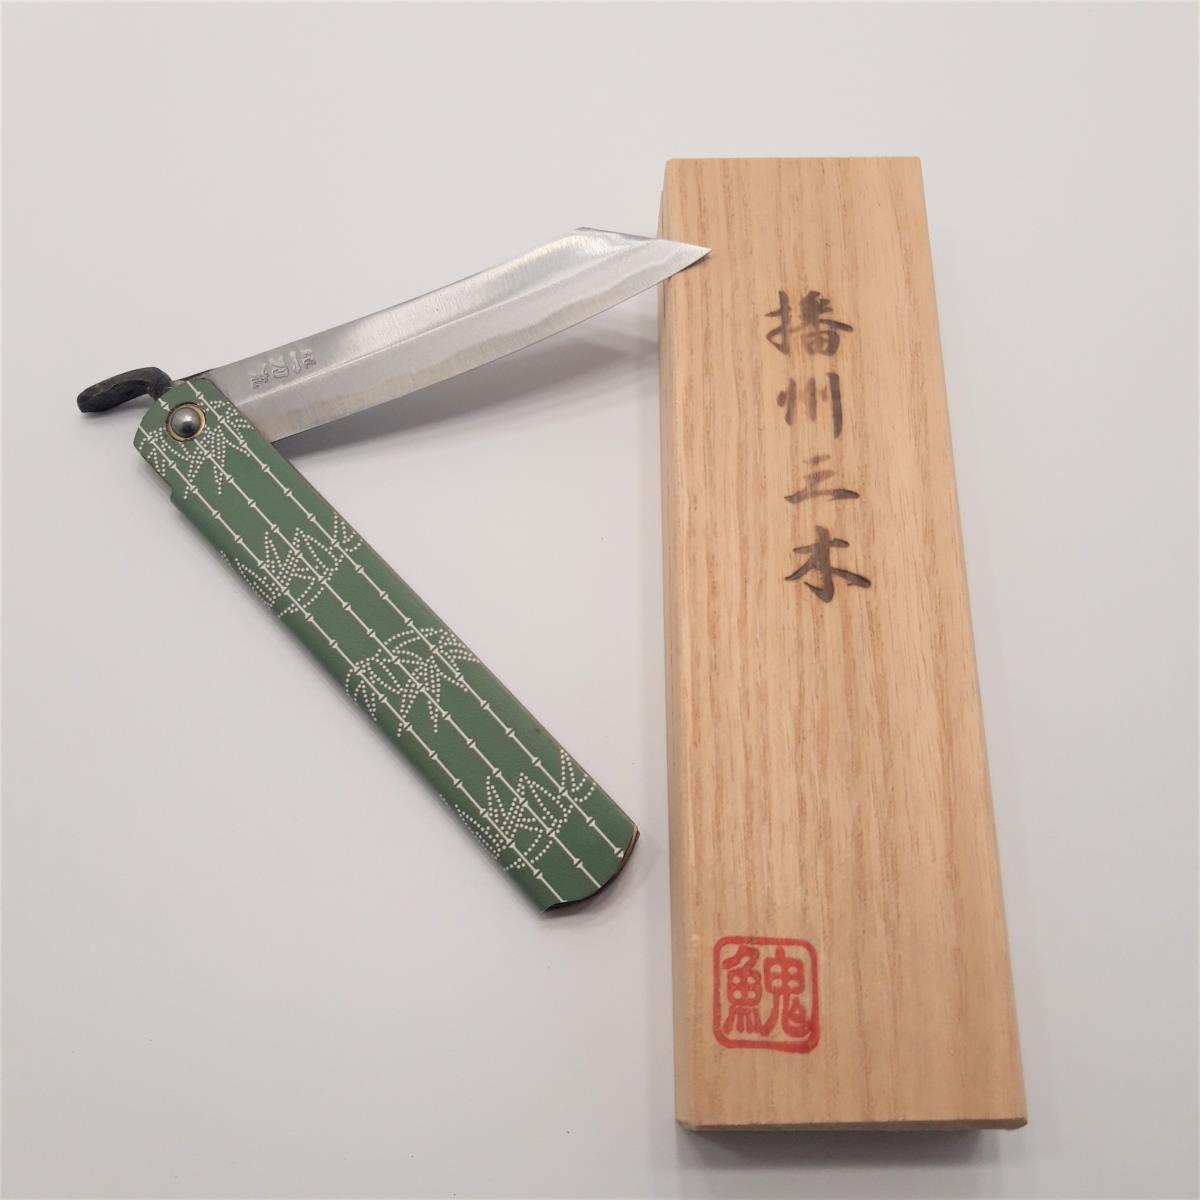 Higonokami "Take", bamboo canes pattern